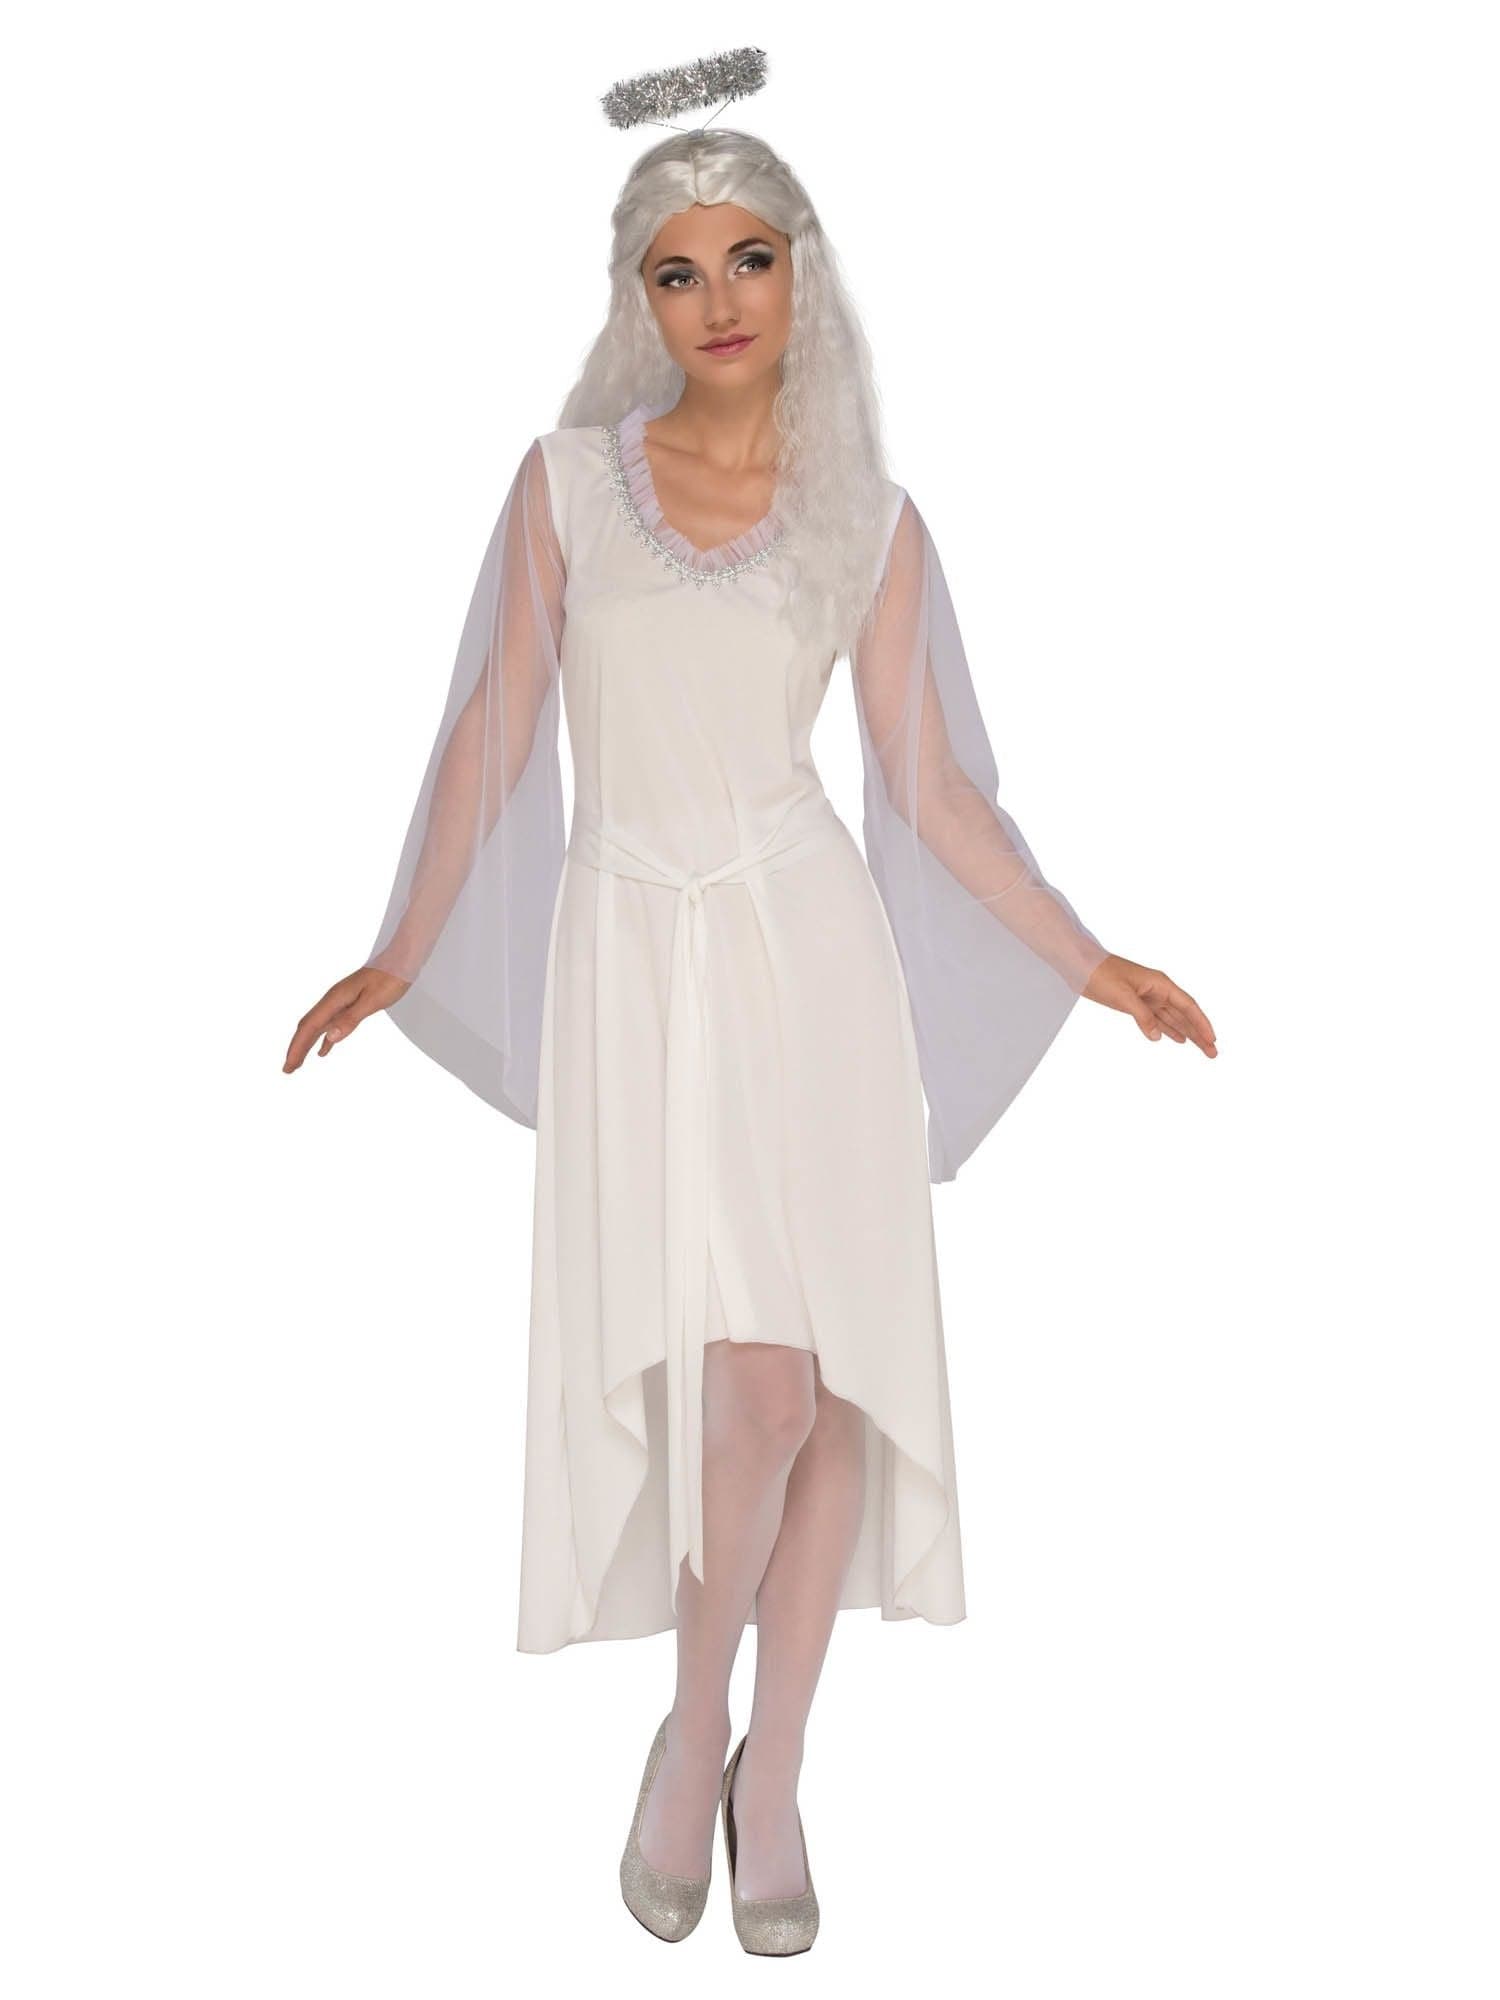 Adult Angel Costume - costumes.com